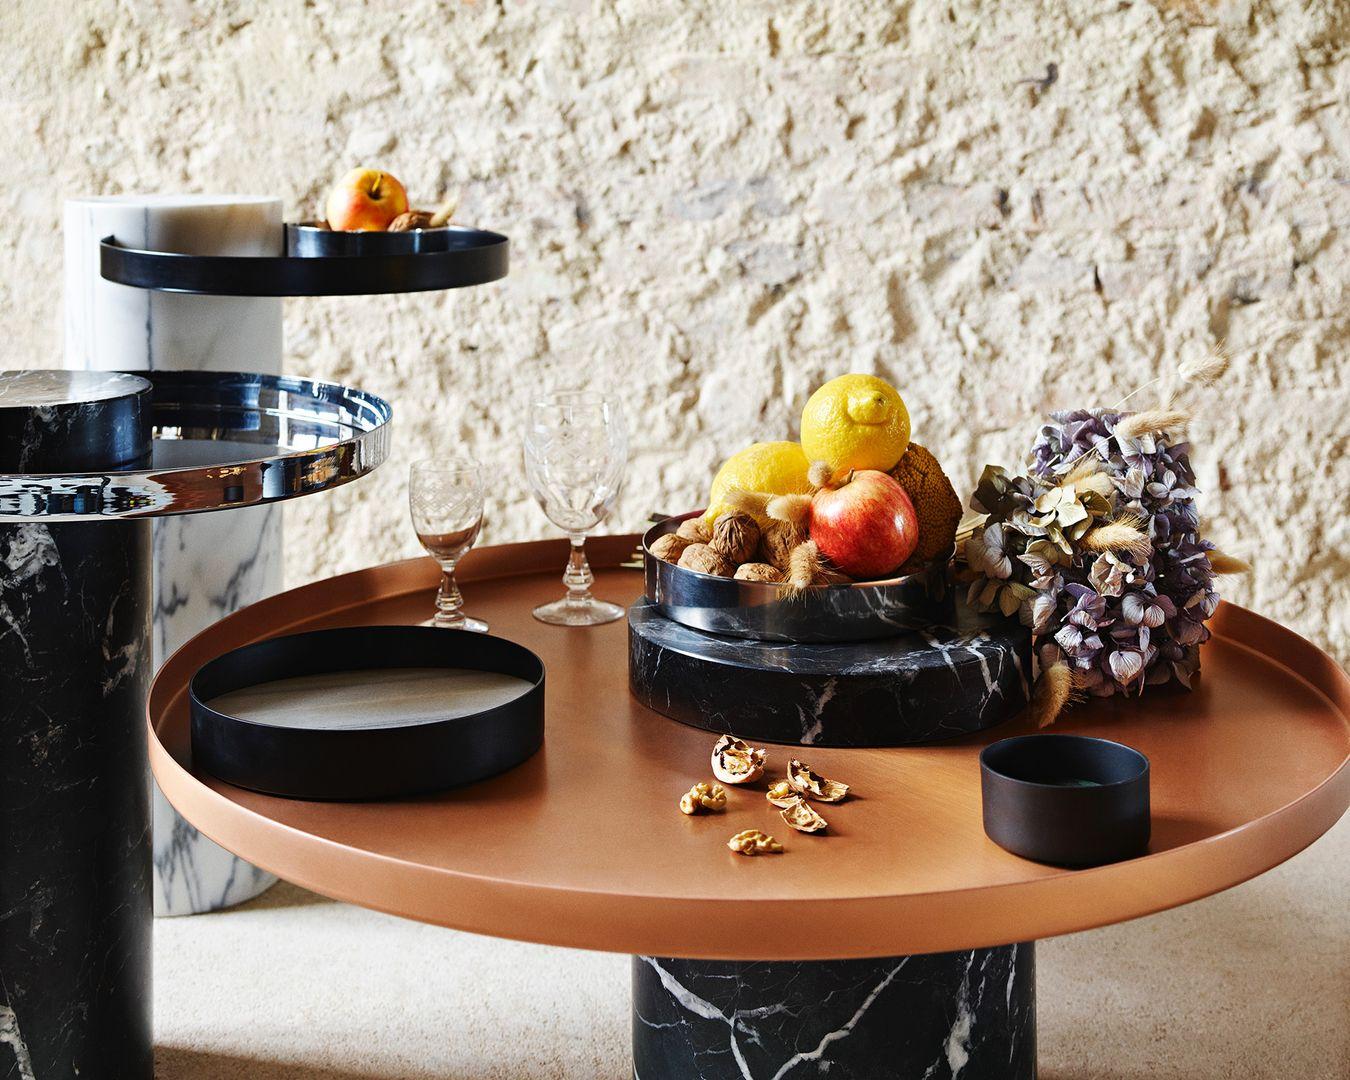 Salute ist eine Tischfamilie, bei der Marmor und Metall kombiniert werden, um eine hohe visuelle Wirkung zu erzielen. Als Beistelltisch ist Salute mit seinen klaren Linien und seiner starken Persönlichkeit der perfekte Begleiter zu Ihrem kultigen